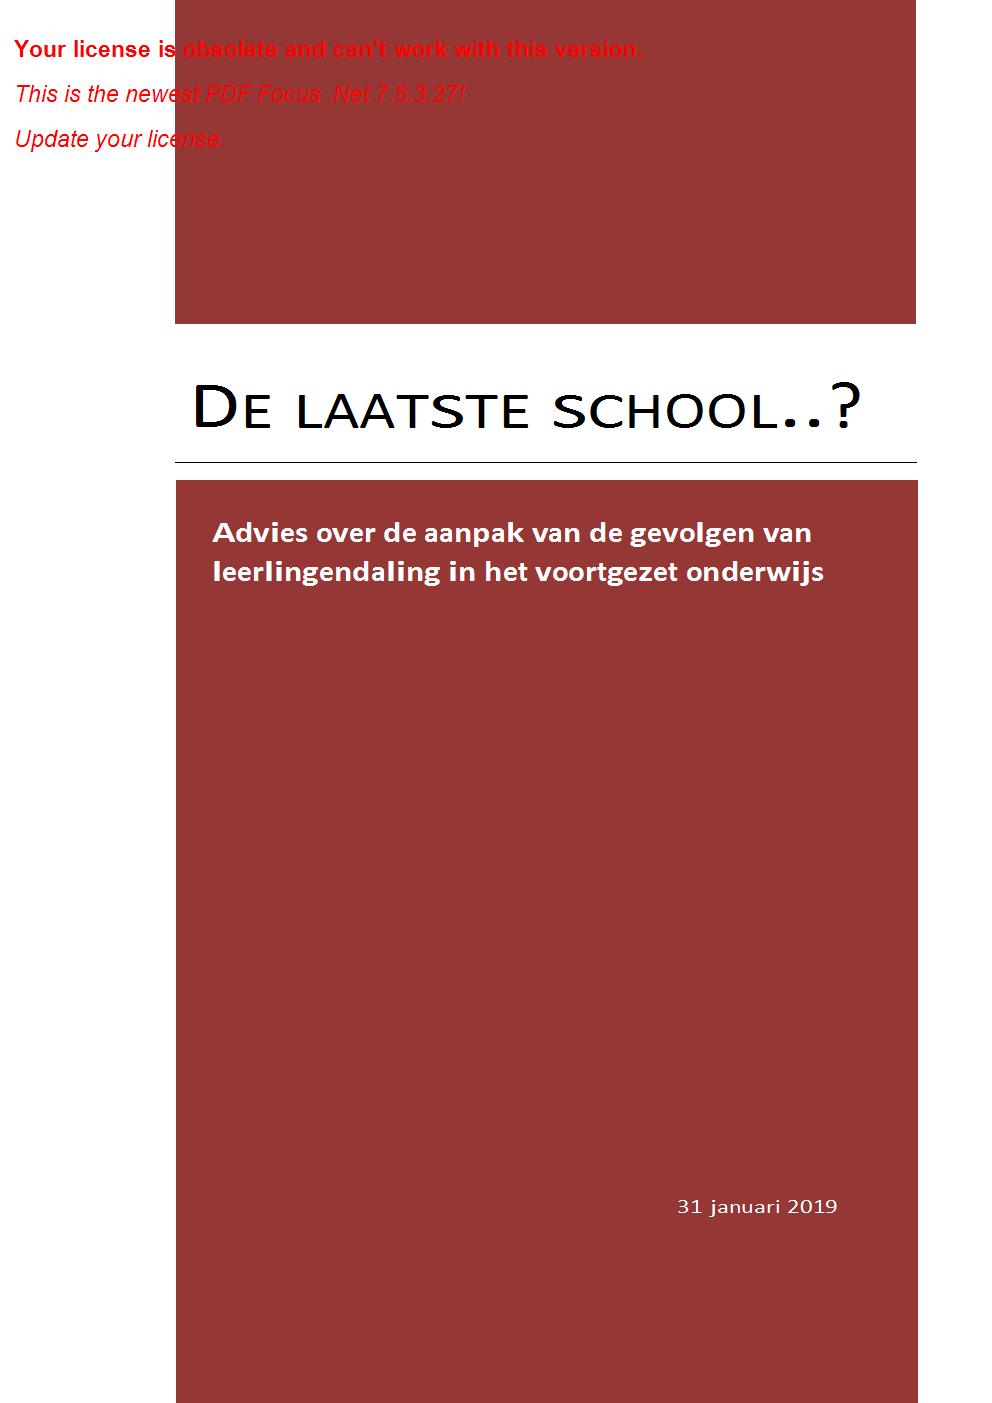 Adviesrapport aanpak leerlingendaling voortgezet onderwijs - Commissie Dijkgraaf